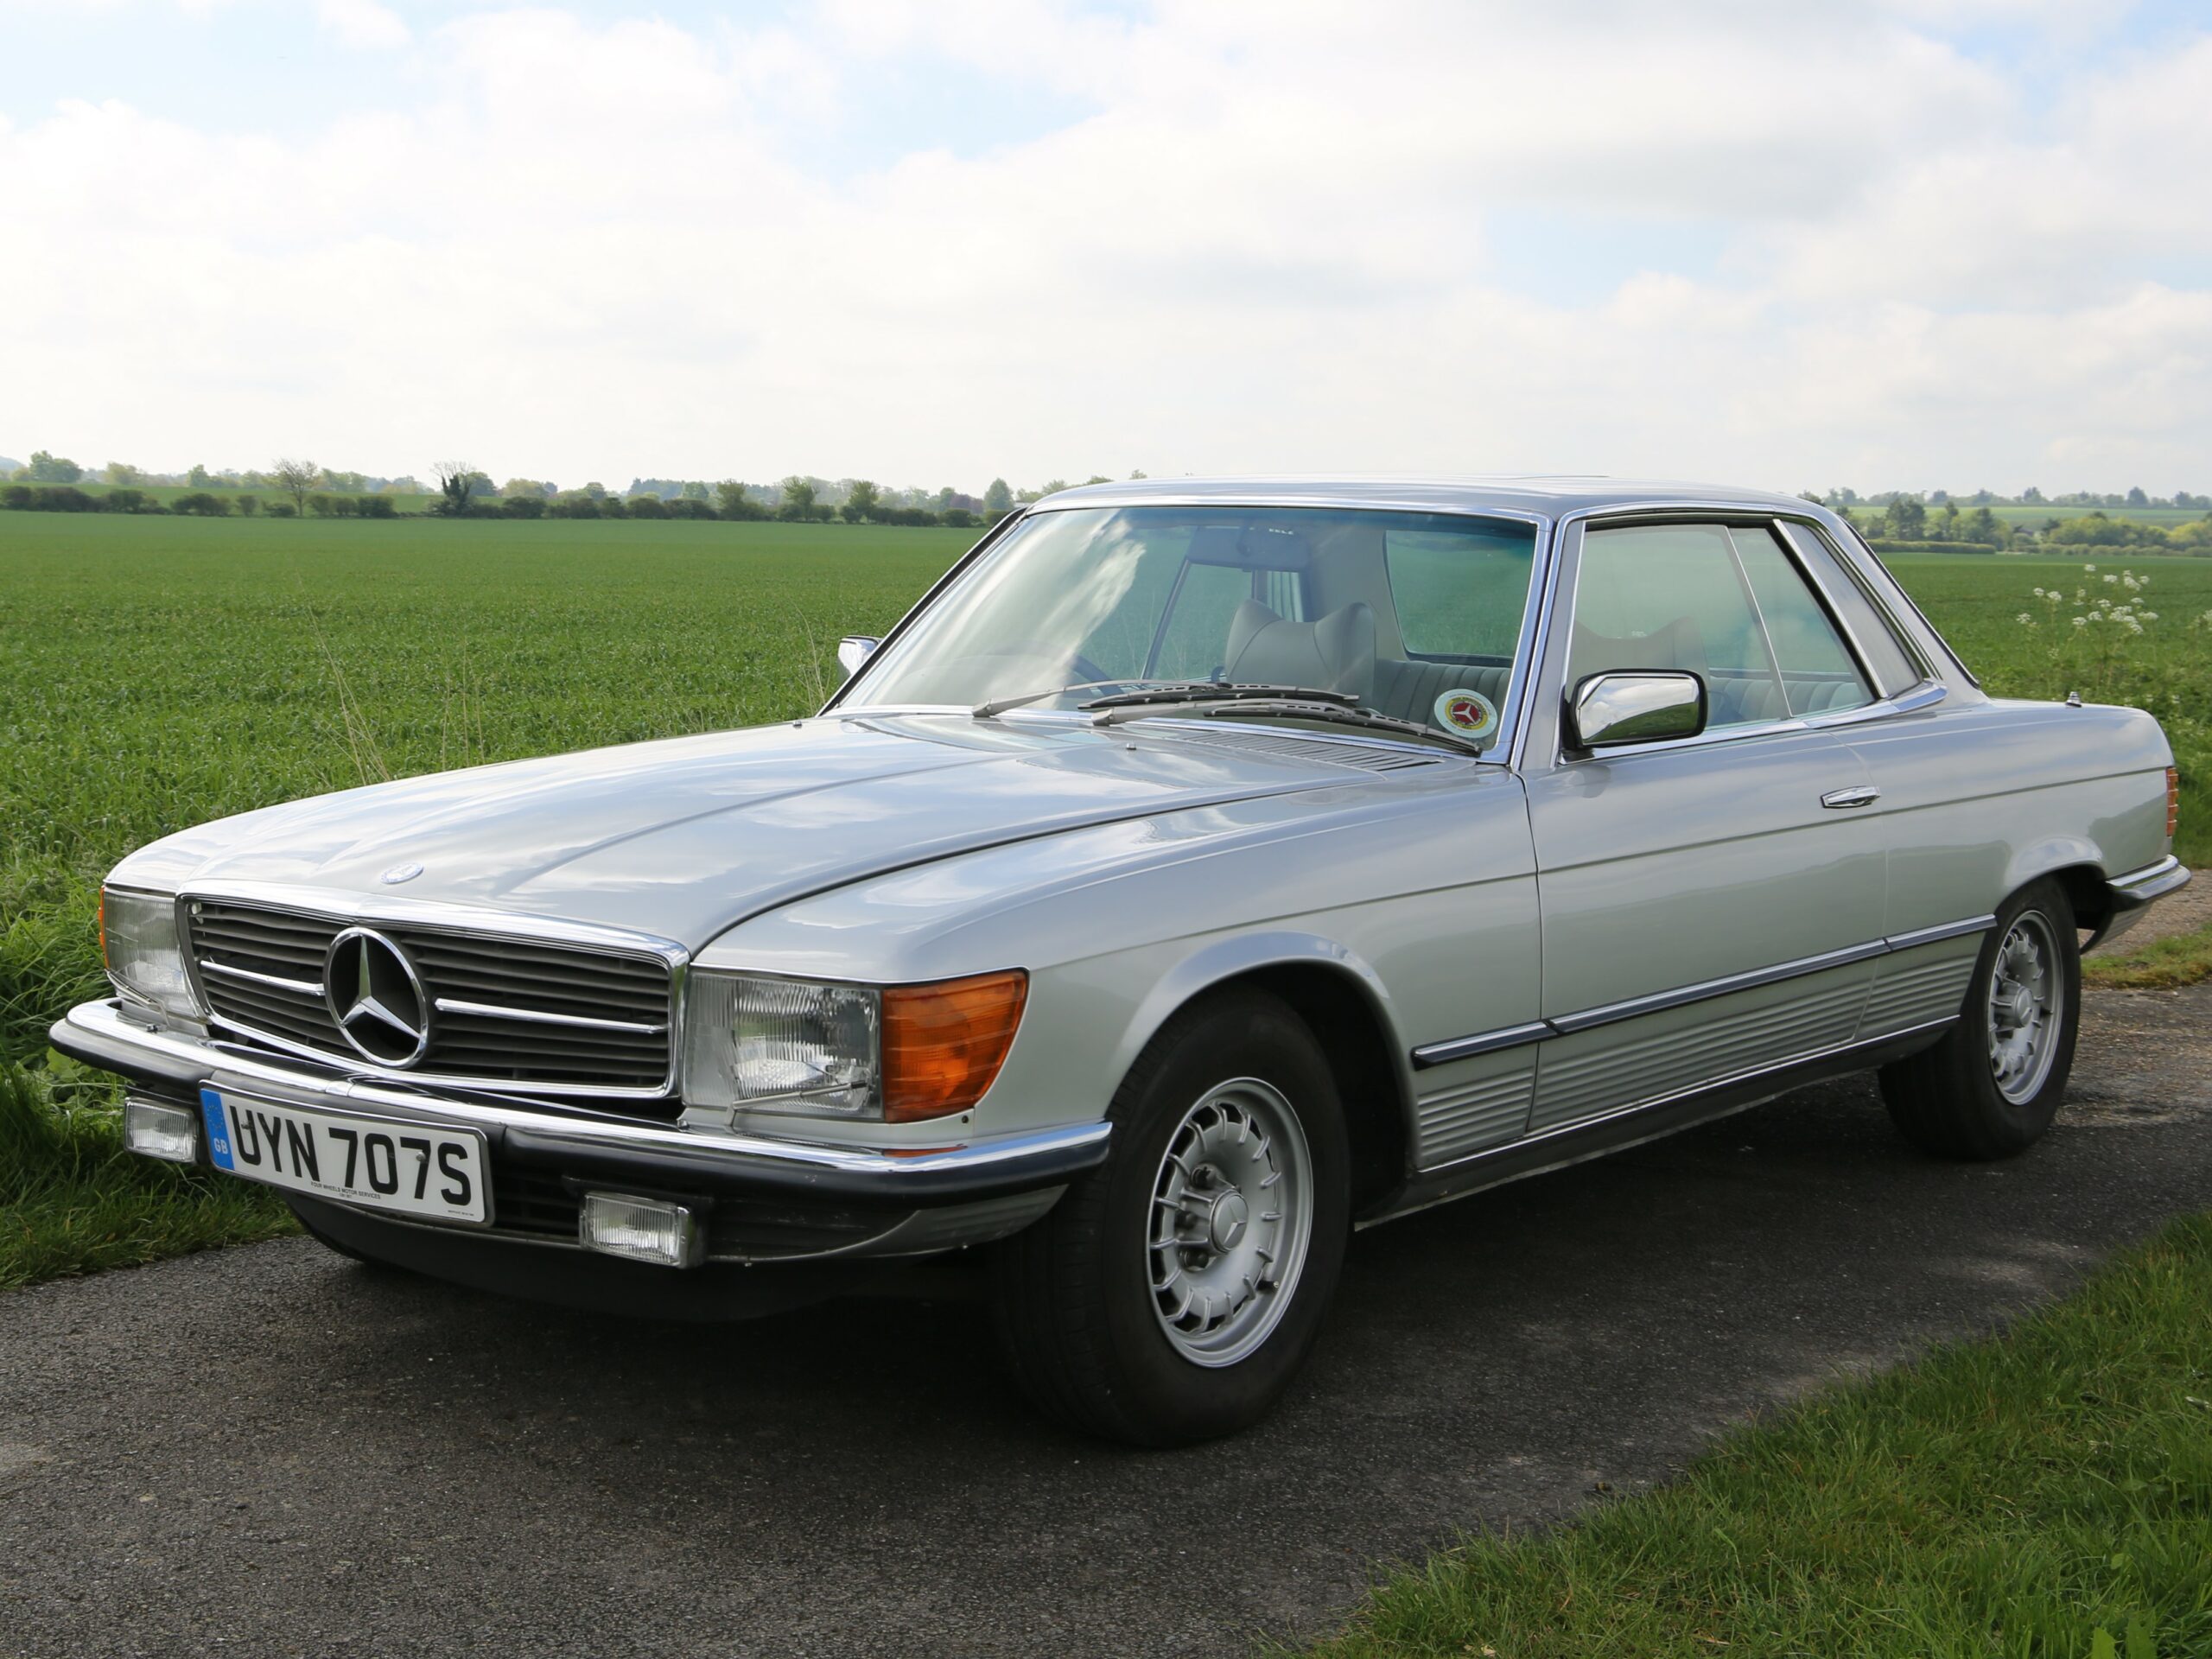 1978 Mercedes 450 SLC Evoke Classics classic cars auction online